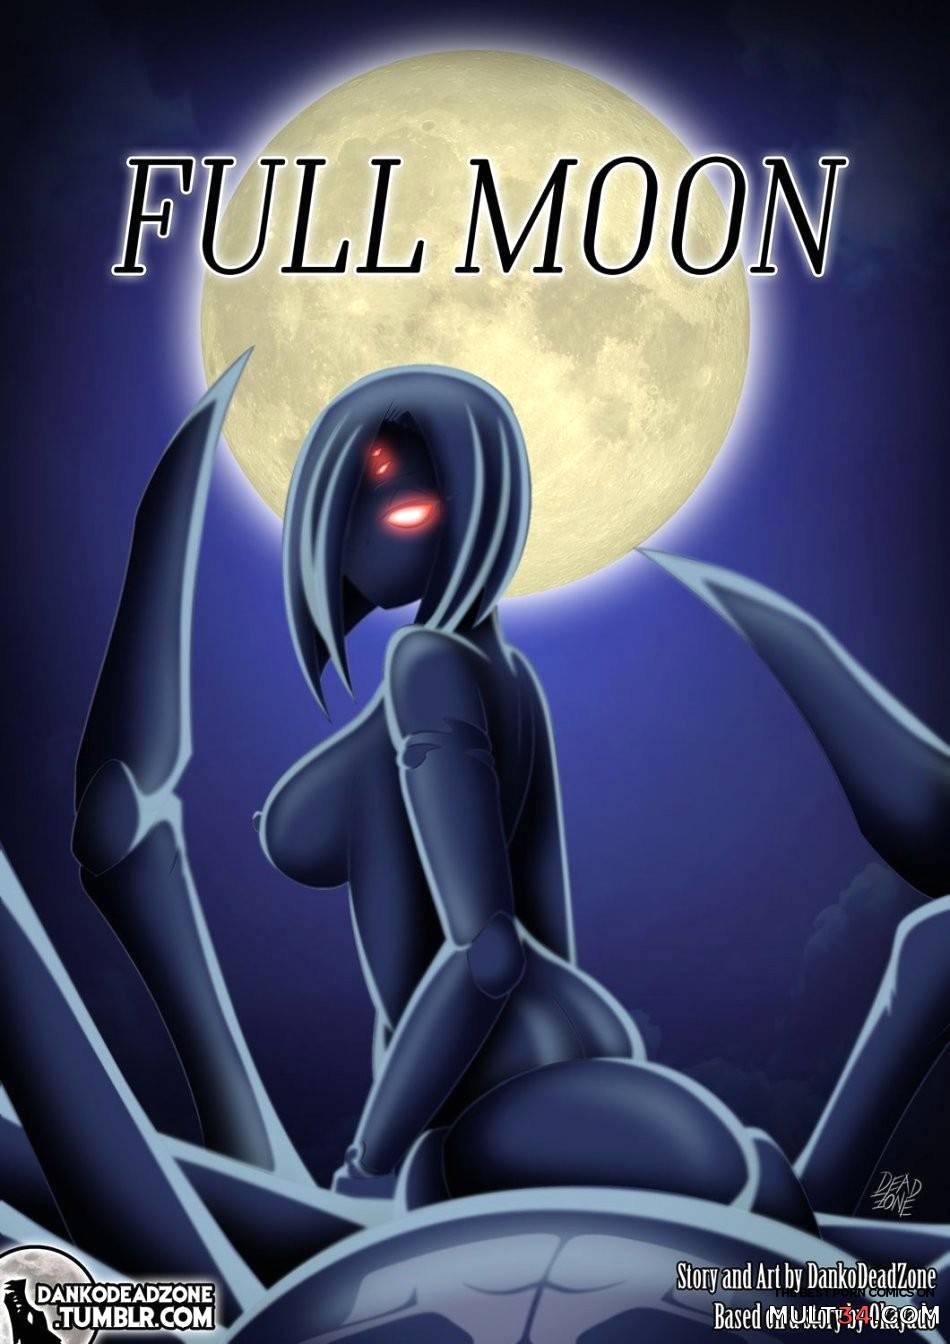 Moon Porn - Full Moon porn comic - the best cartoon porn comics, Rule 34 | MULT34